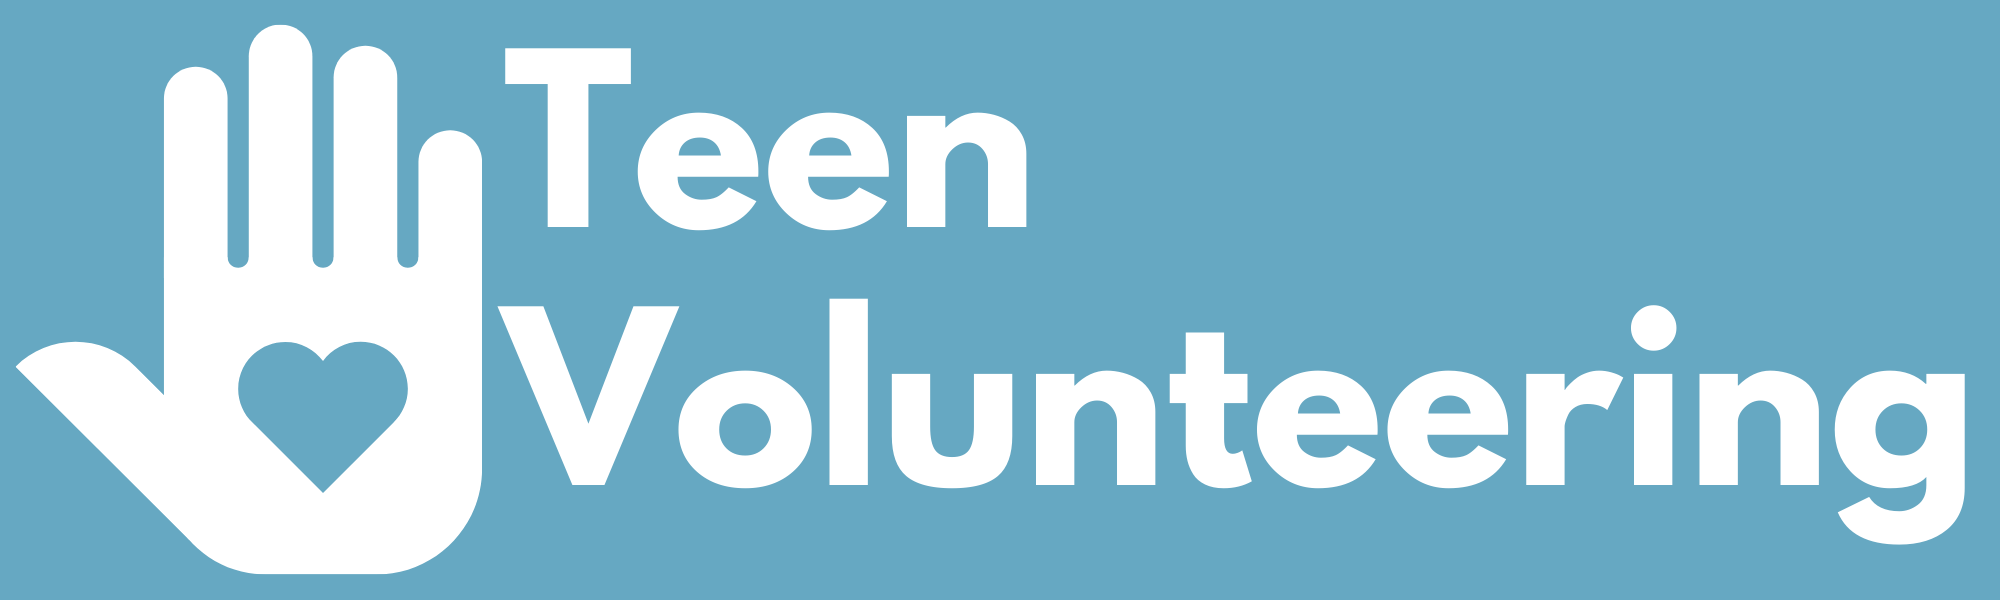 Teen Volunteers | Messenger Public Library